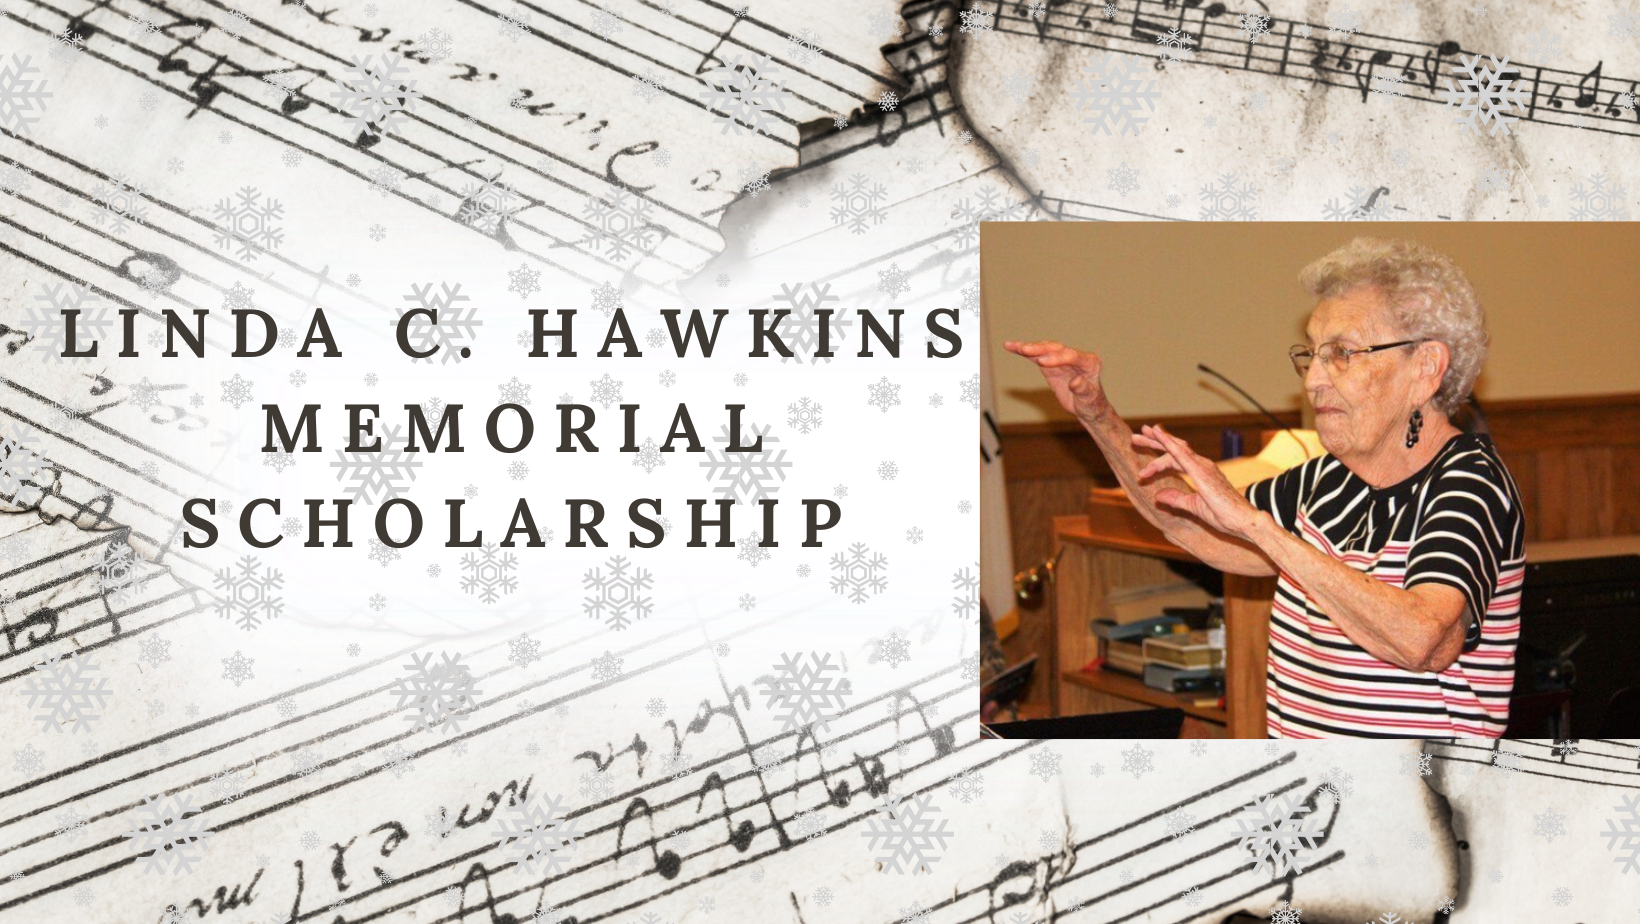 The Linda C. Hawkins Memorial Scholarship